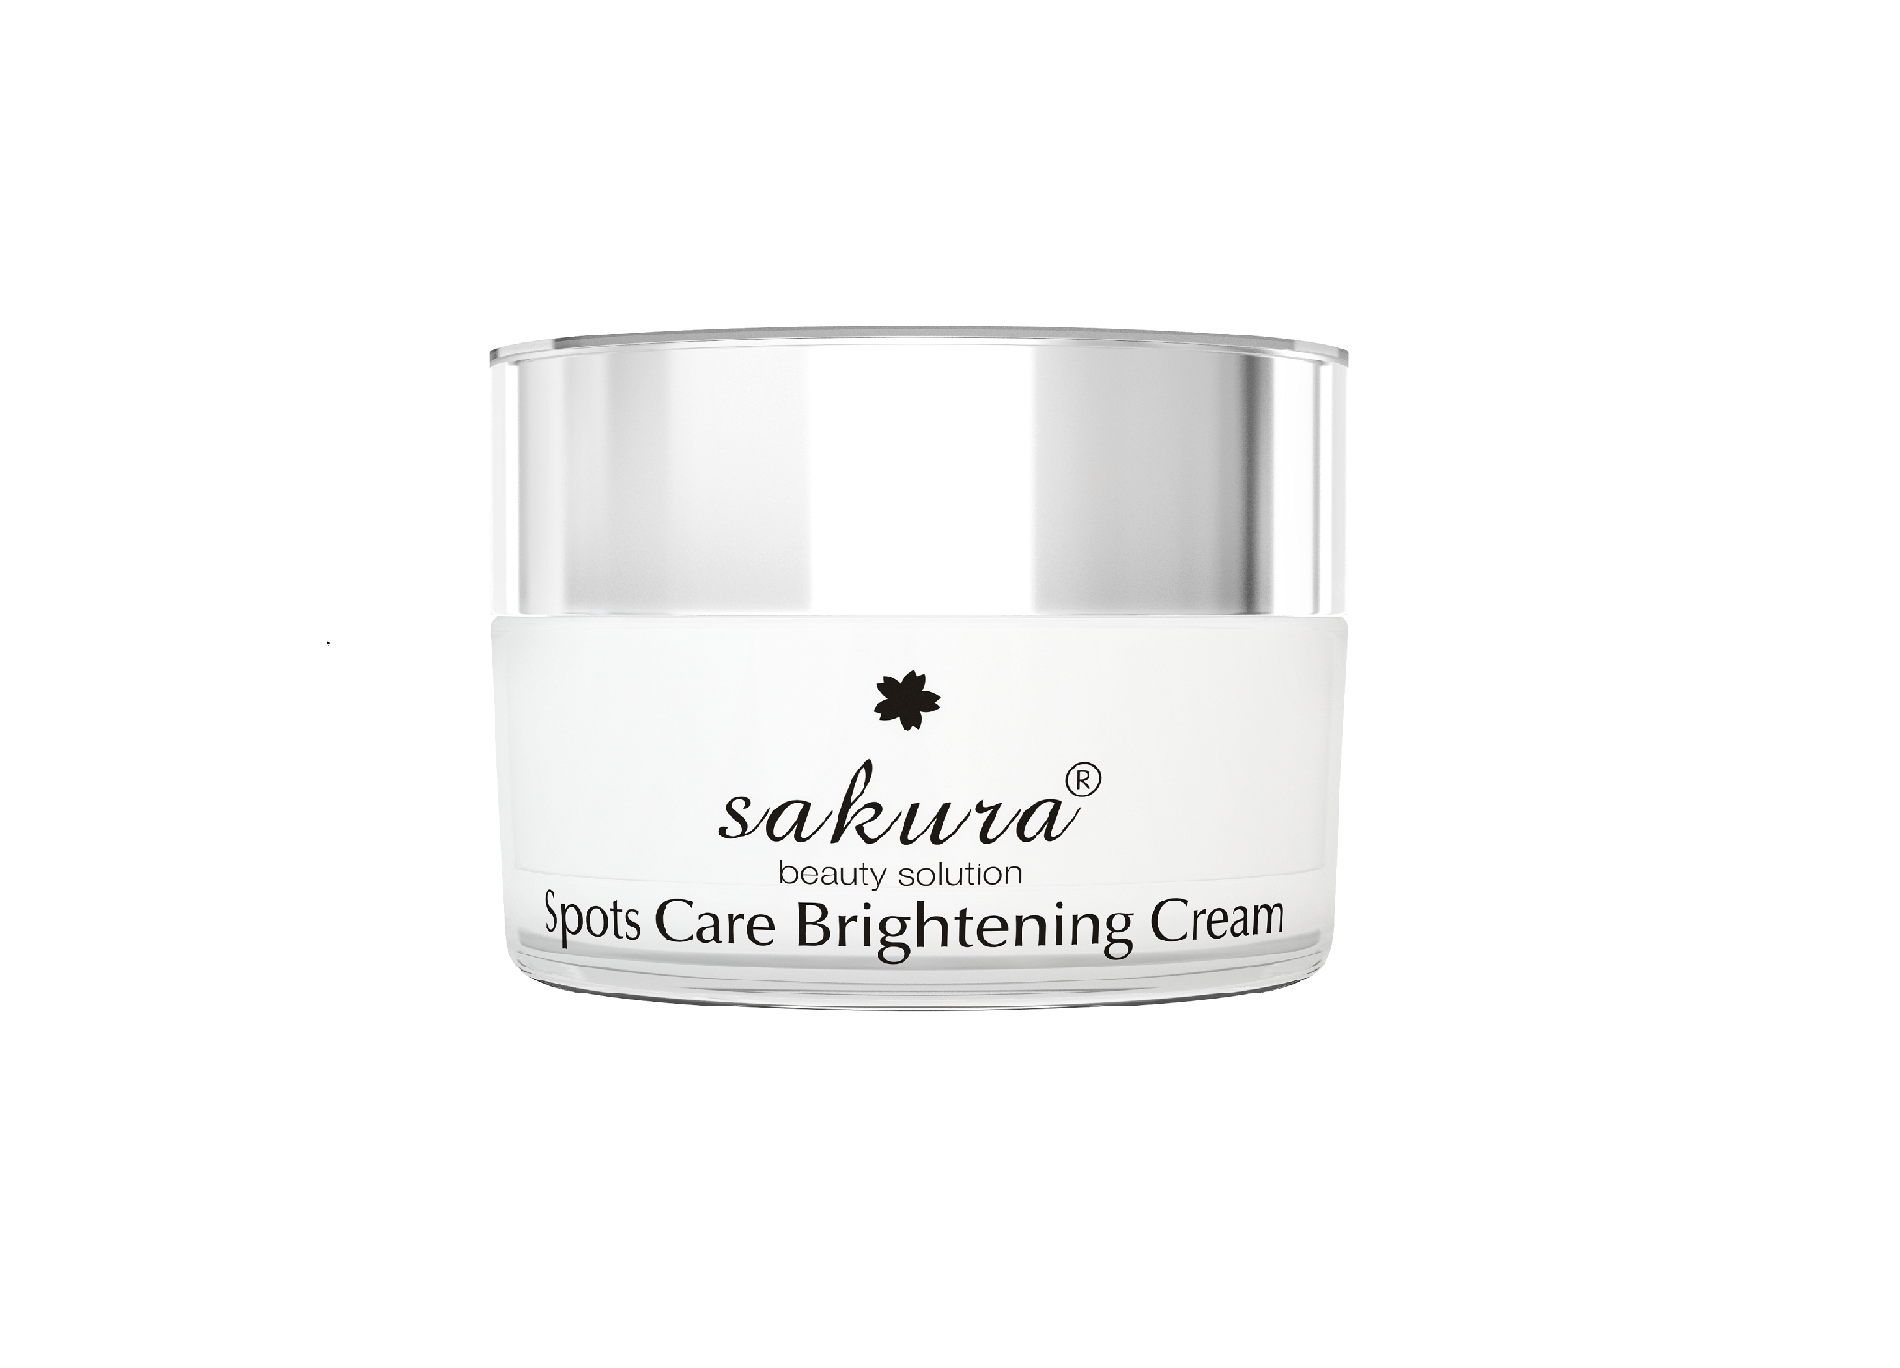 Phiên bản mới "Sakura Spots Care Brightening Cream 13g" - Nhỏ hơn - Tiện dụng hơn